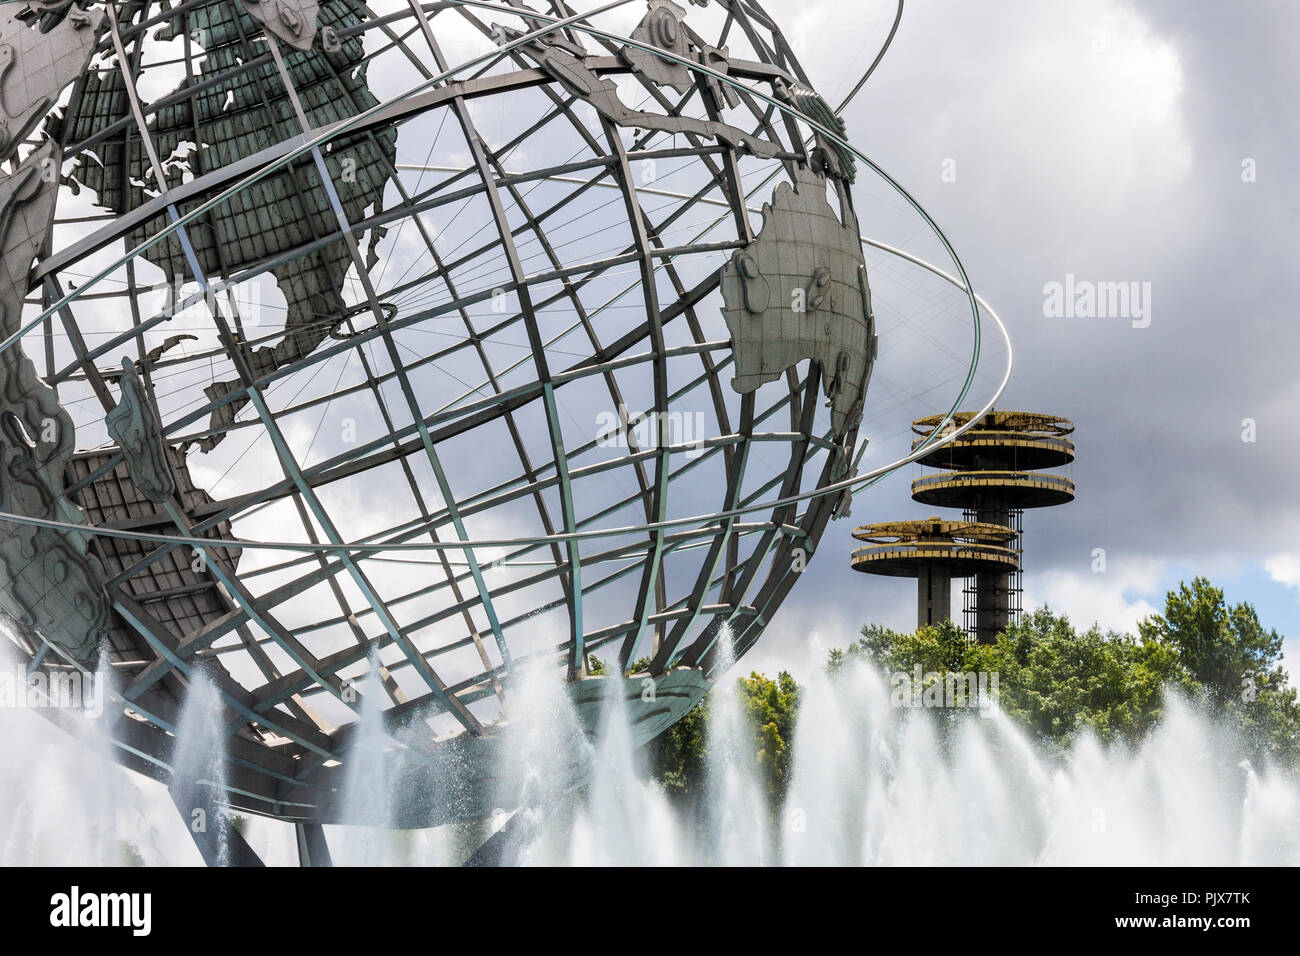 La città di New York. L'Unisfera, una forma sferica in acciaio inox rappresentazione della terra in Flushing Meadows Corona Park, Queens, con l'osservatorio Foto Stock